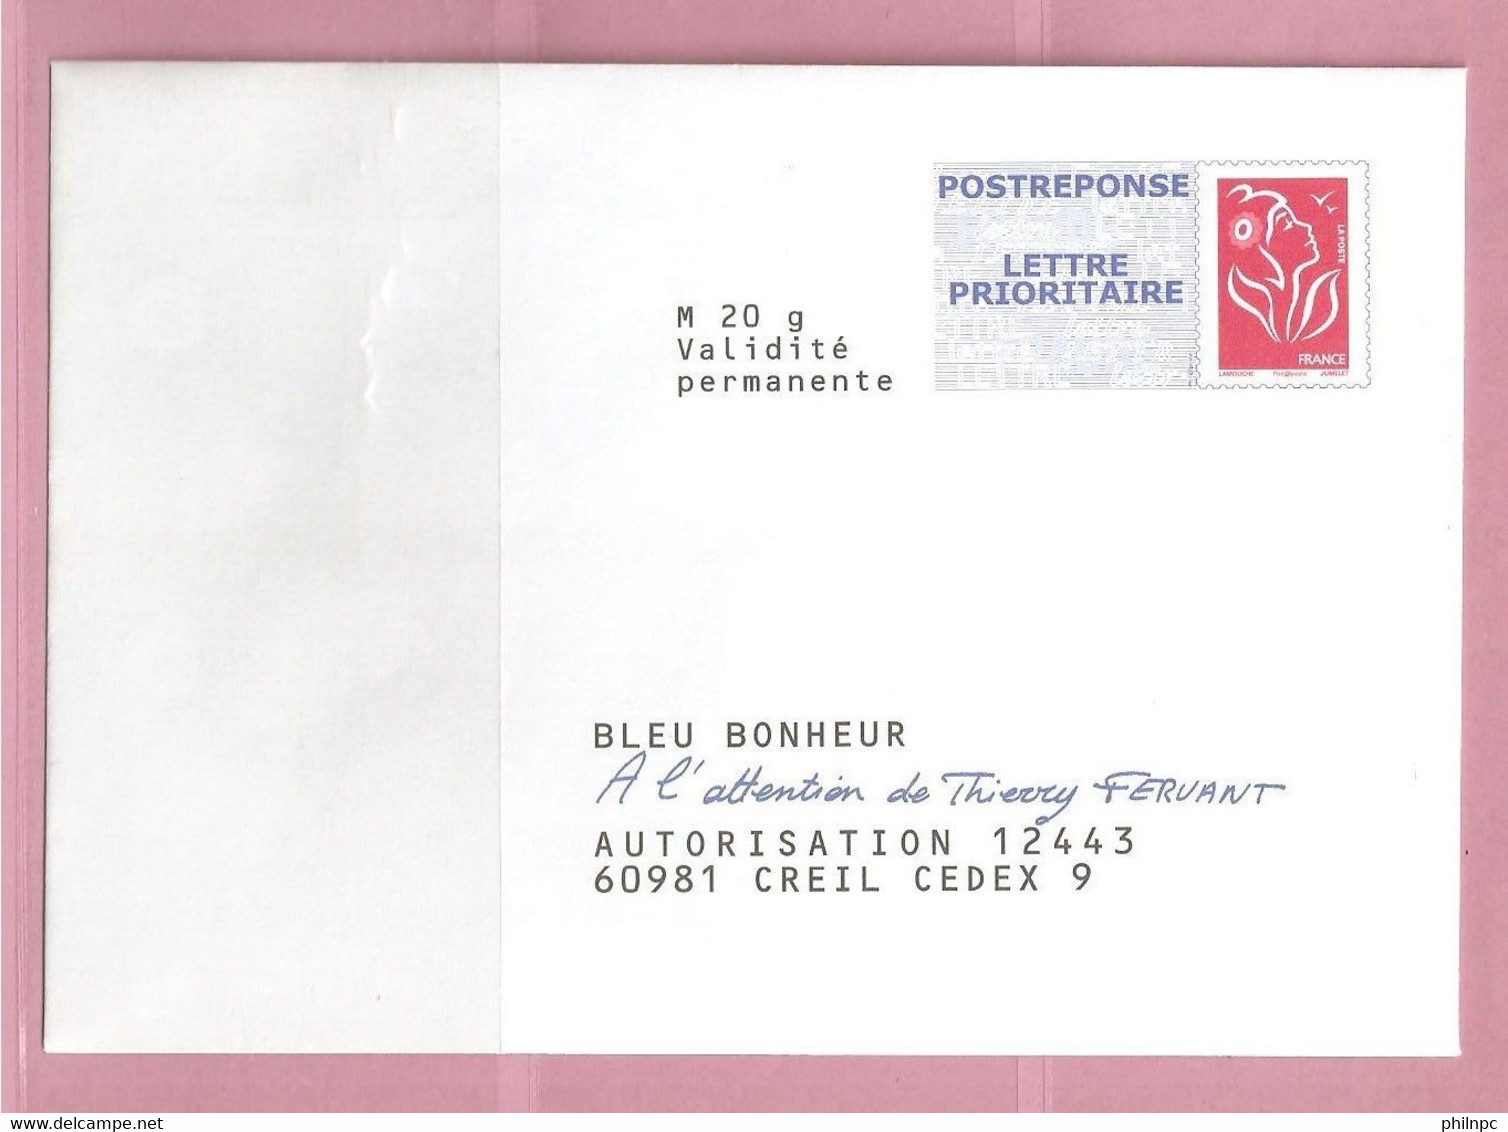 France, Prêt à Poster Réponse, 3734A, Postréponse, Bleu Bonheur, Marianne De Lamouche - PAP: Antwort/Lamouche